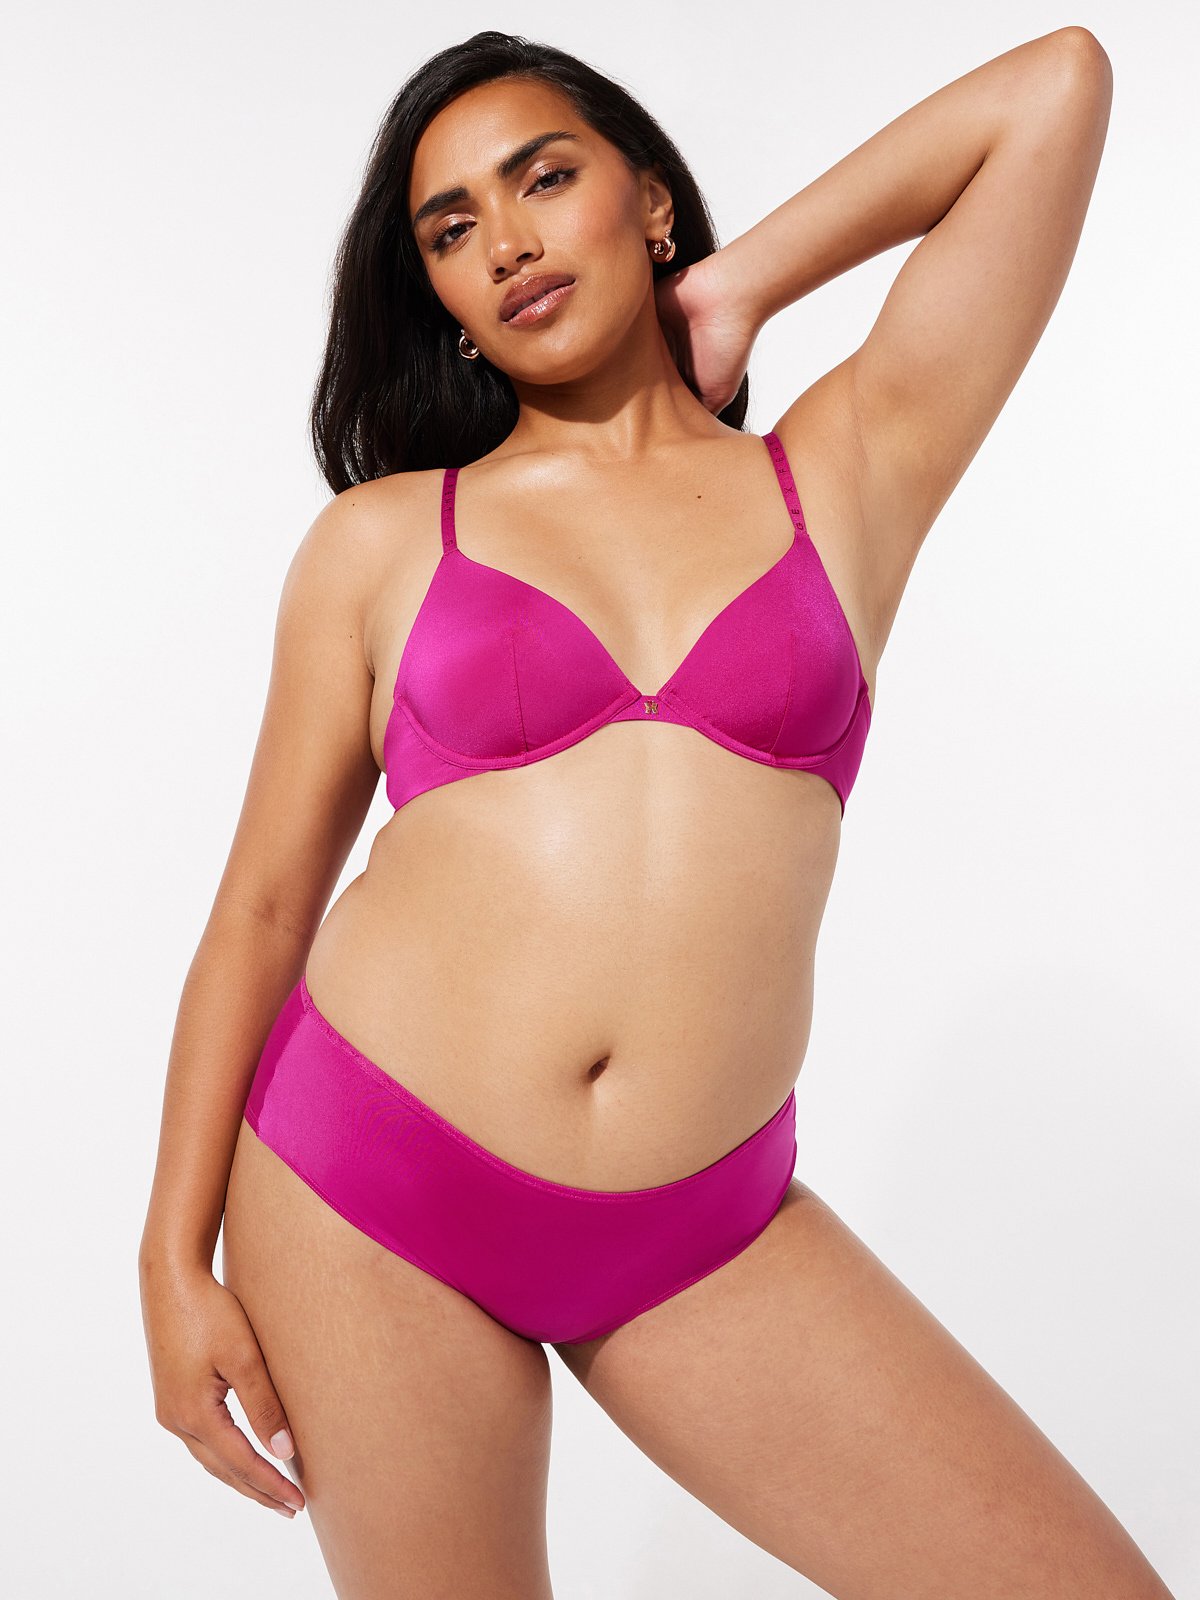 PINK - Victoria's Secret Purple Bra Size 34 G / DDDD - $19 (68% Off